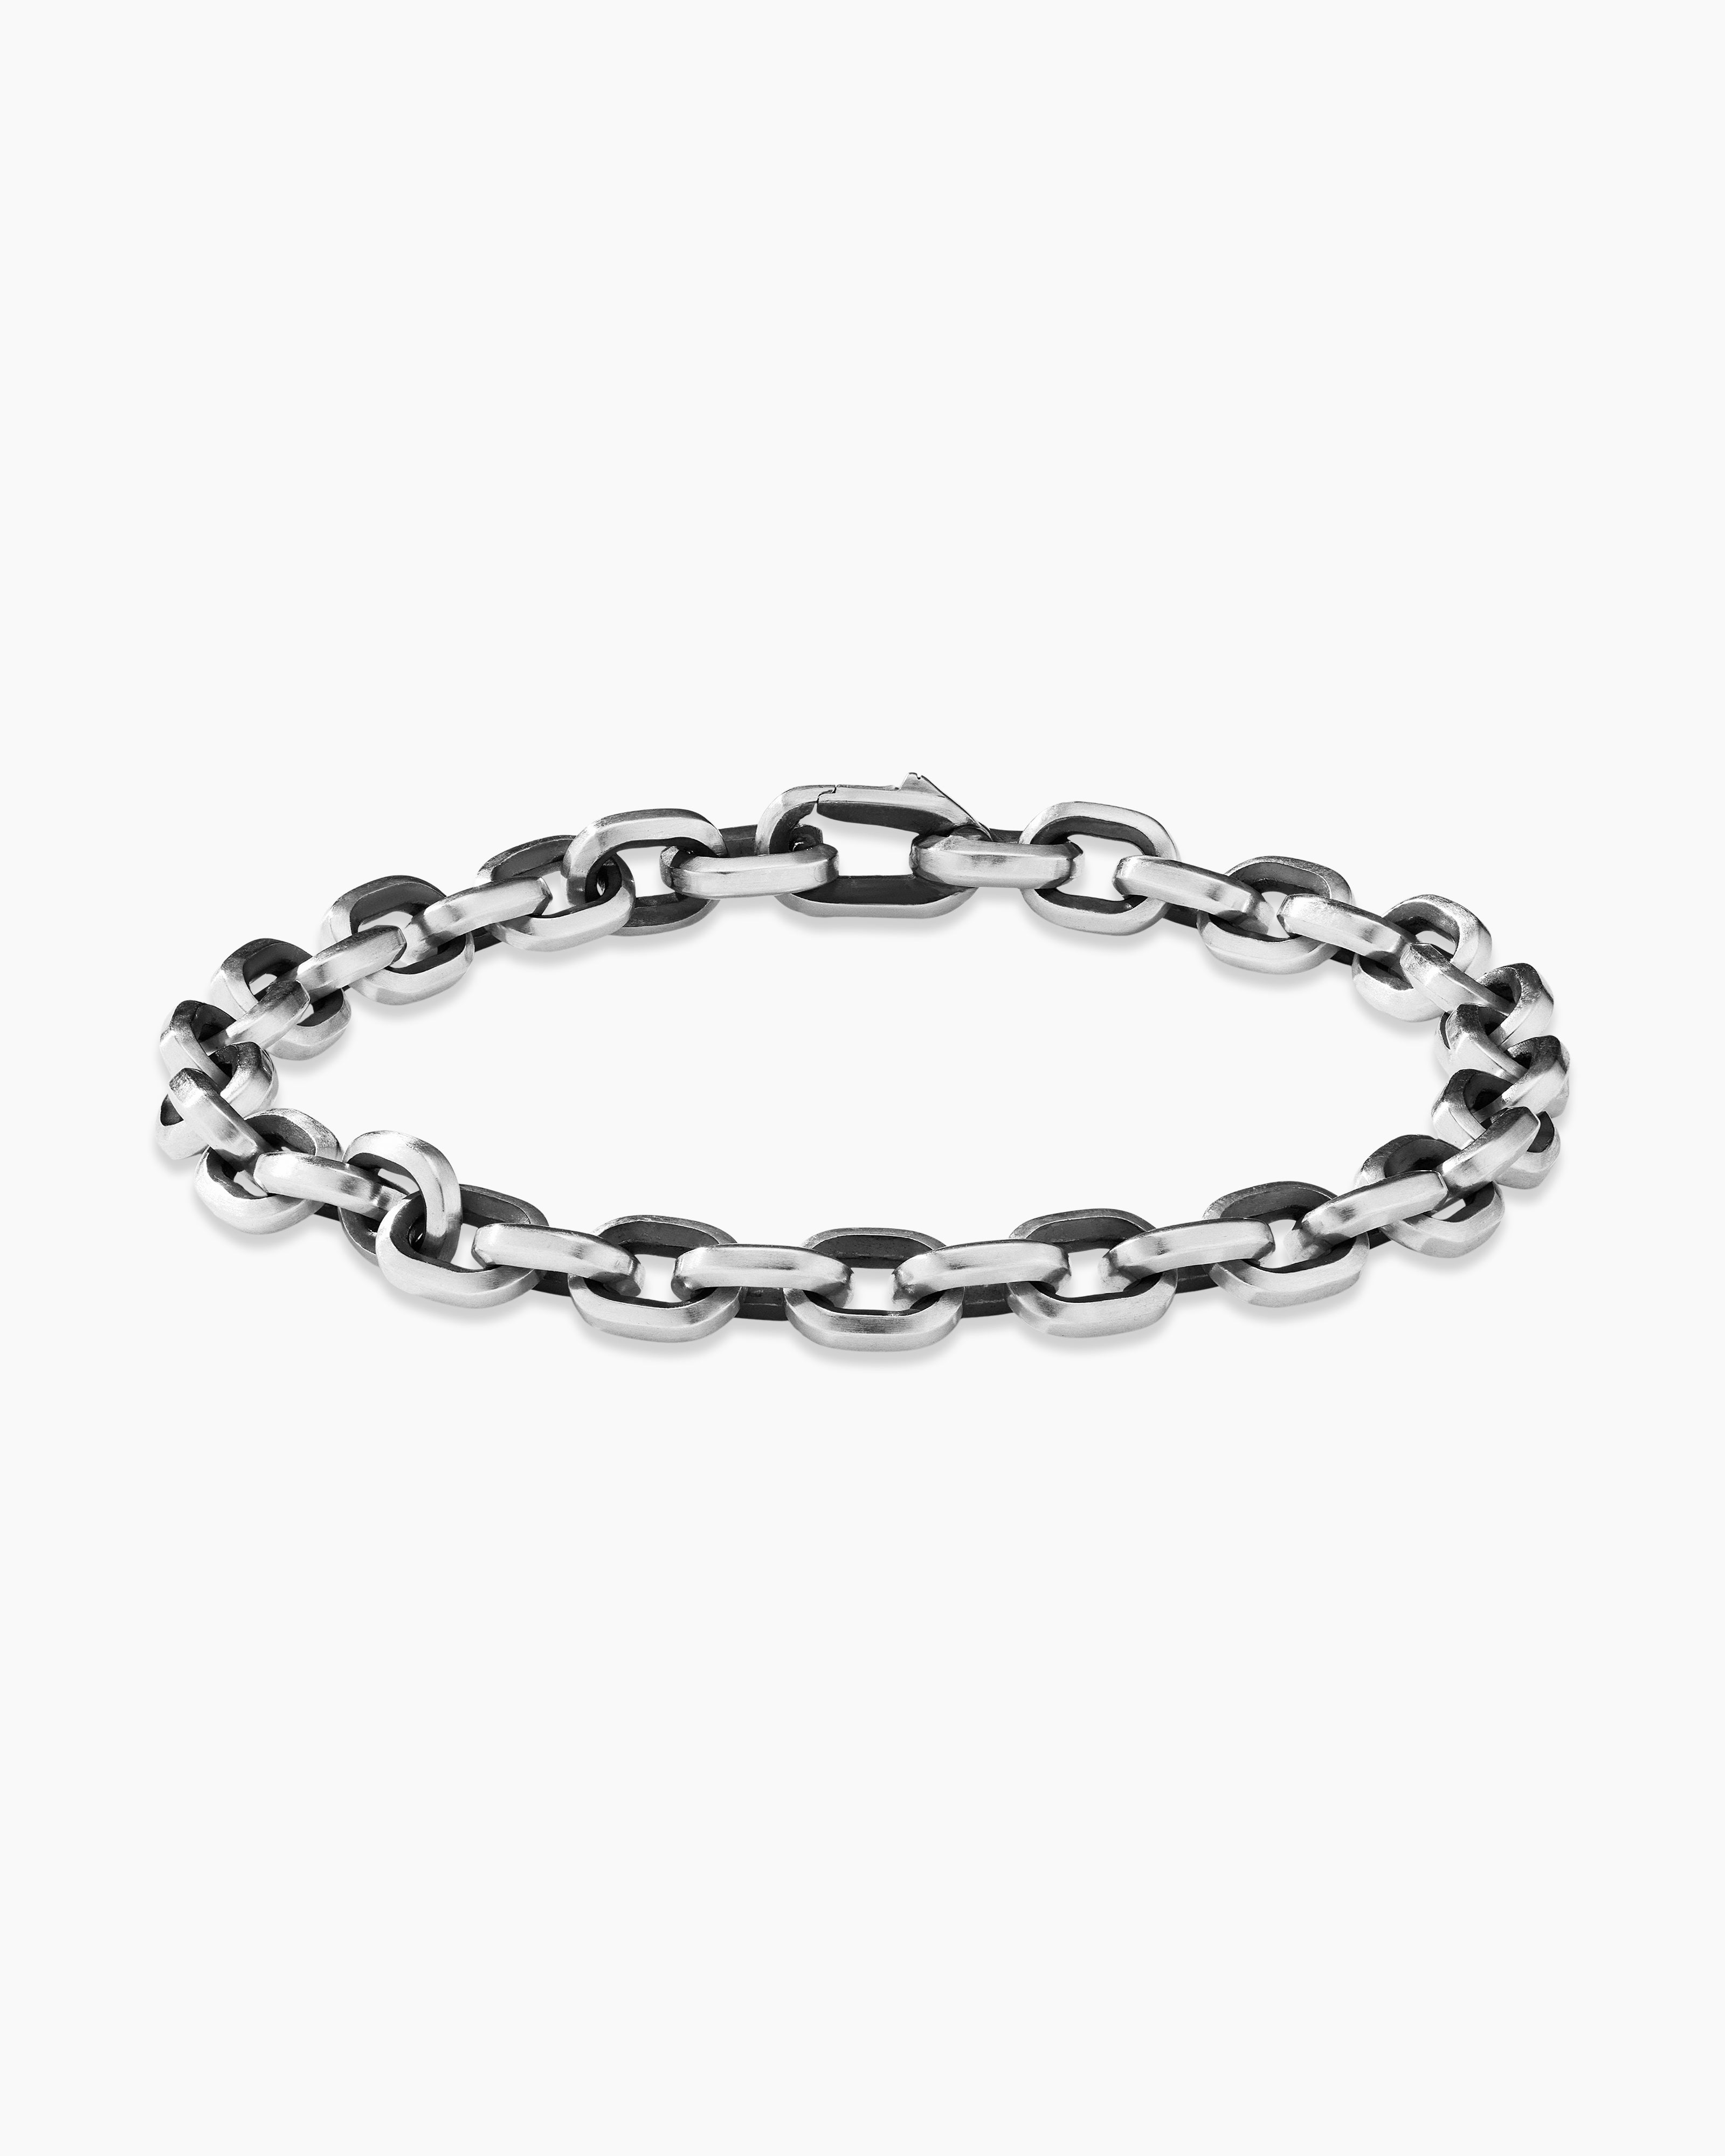 David Yurman Men's Deco Chain Link Bracelet in Silver, 6.5mm